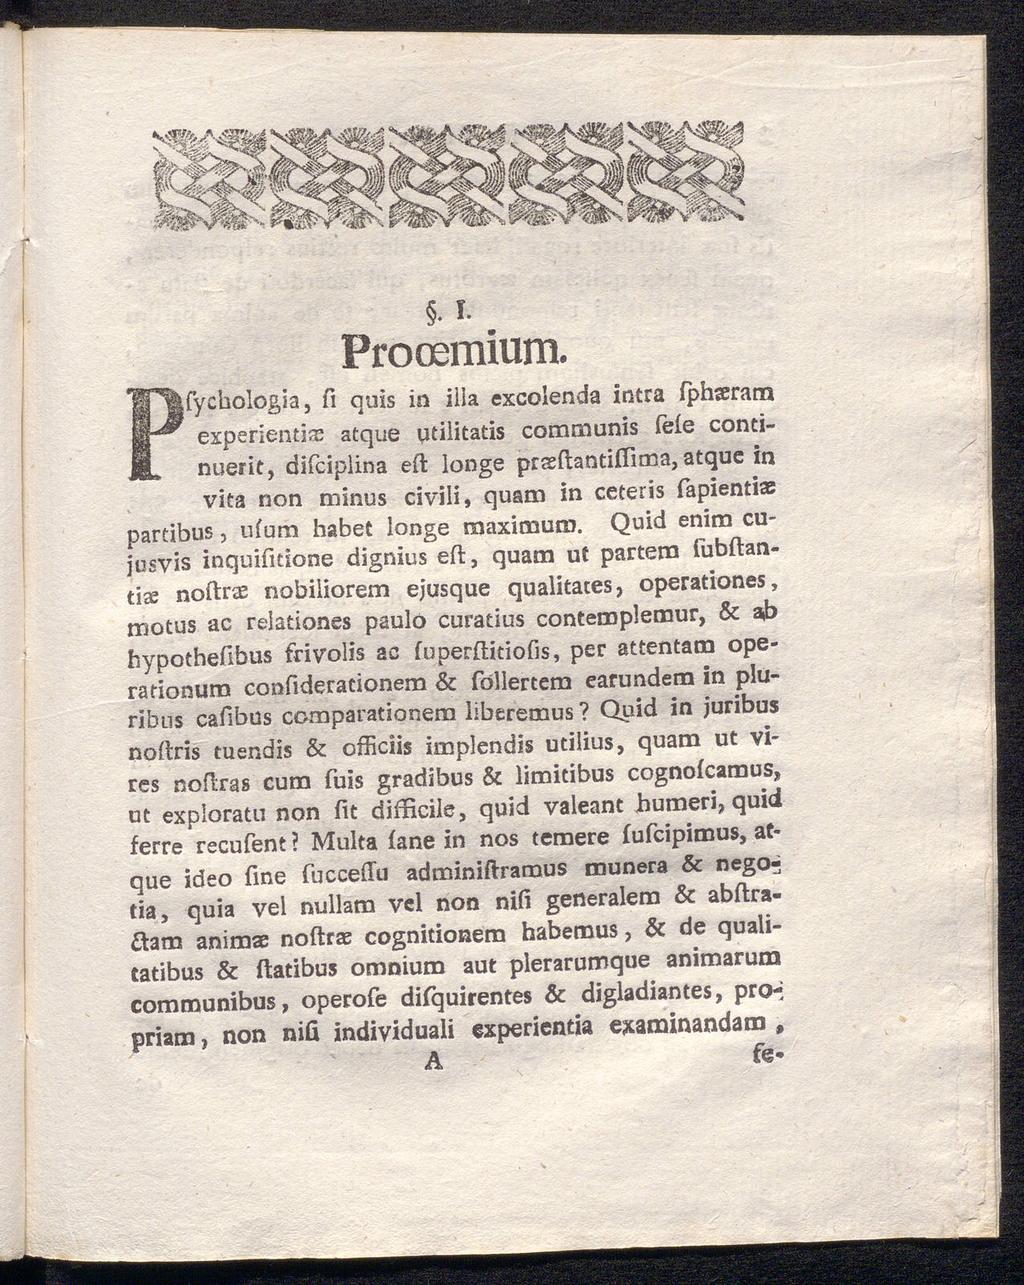 . ι. Prooemium.